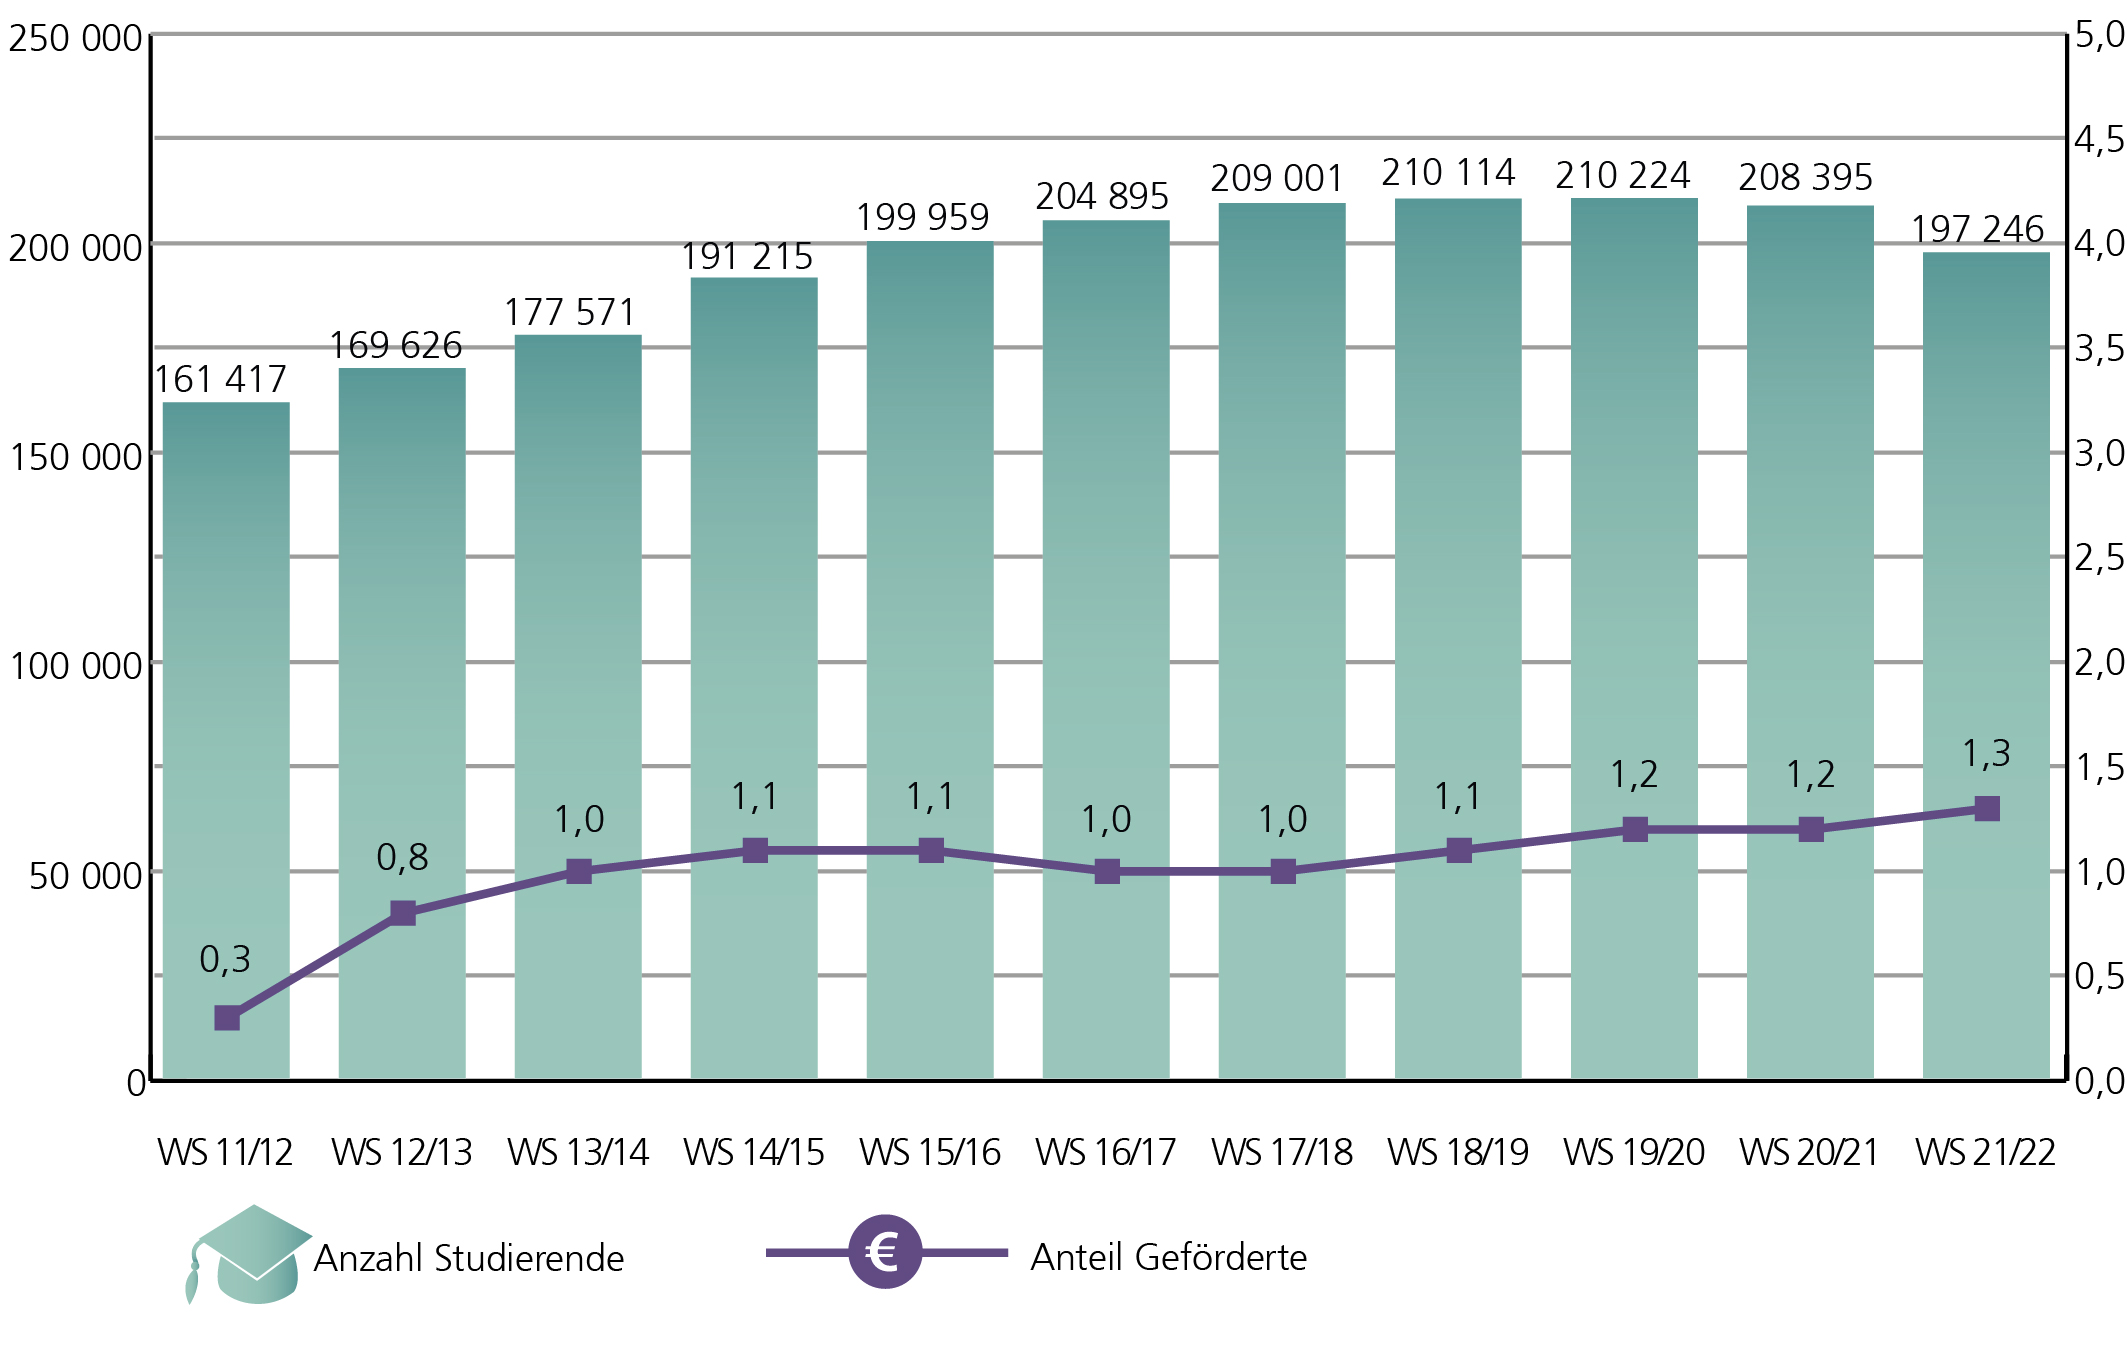 A2: Der Anteil der mit einem Deutschlandstipendium geförderten Studierenden hat sich, bezogen auf die Zahl der niedersächsischen Studierenden in den Wintersemestern 2011/2012 bis 2021/2022, innerhalb von 10 Jahren von 0,3 % auf 1,3 % erhöht. Die Zahl der Studierenden in Niedersachsen stieg dabei zwischen dem Wintersemester 2011/2012 und dem Wintersemester 2019/2020 ebenfalls an, von 161.417 auf 210.224 Personen. Seit dem Wintersemester 2020/2021 zeigte sich eine rückläufige Entwicklung der Studierendenzahlen. Im Wintersemester 2021/2022 studierten noch 197.246 Personen an niedersächsischen Hochschulen.